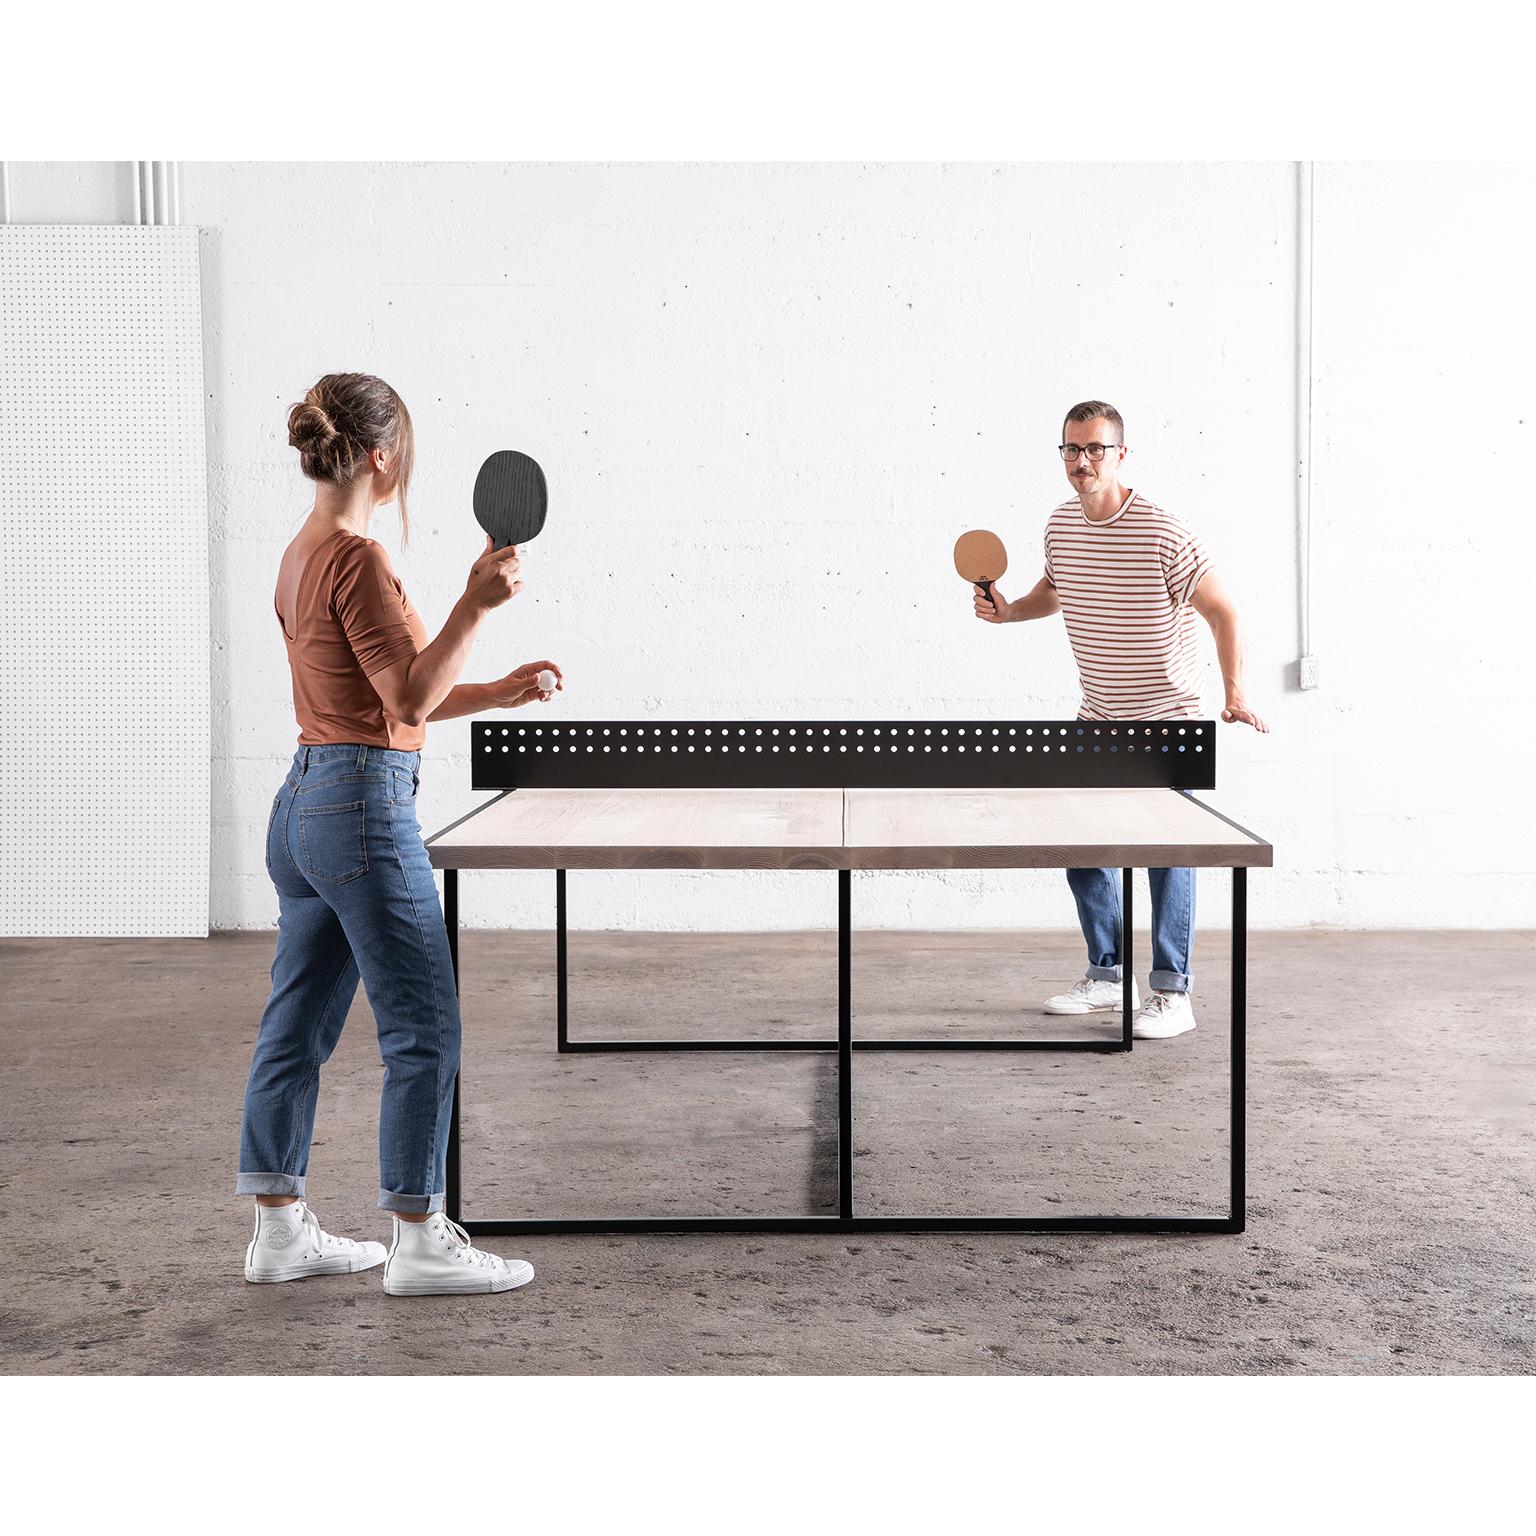 Moderne Table de ping-pong moderne personnalisable « The Break » (La bague) en vente